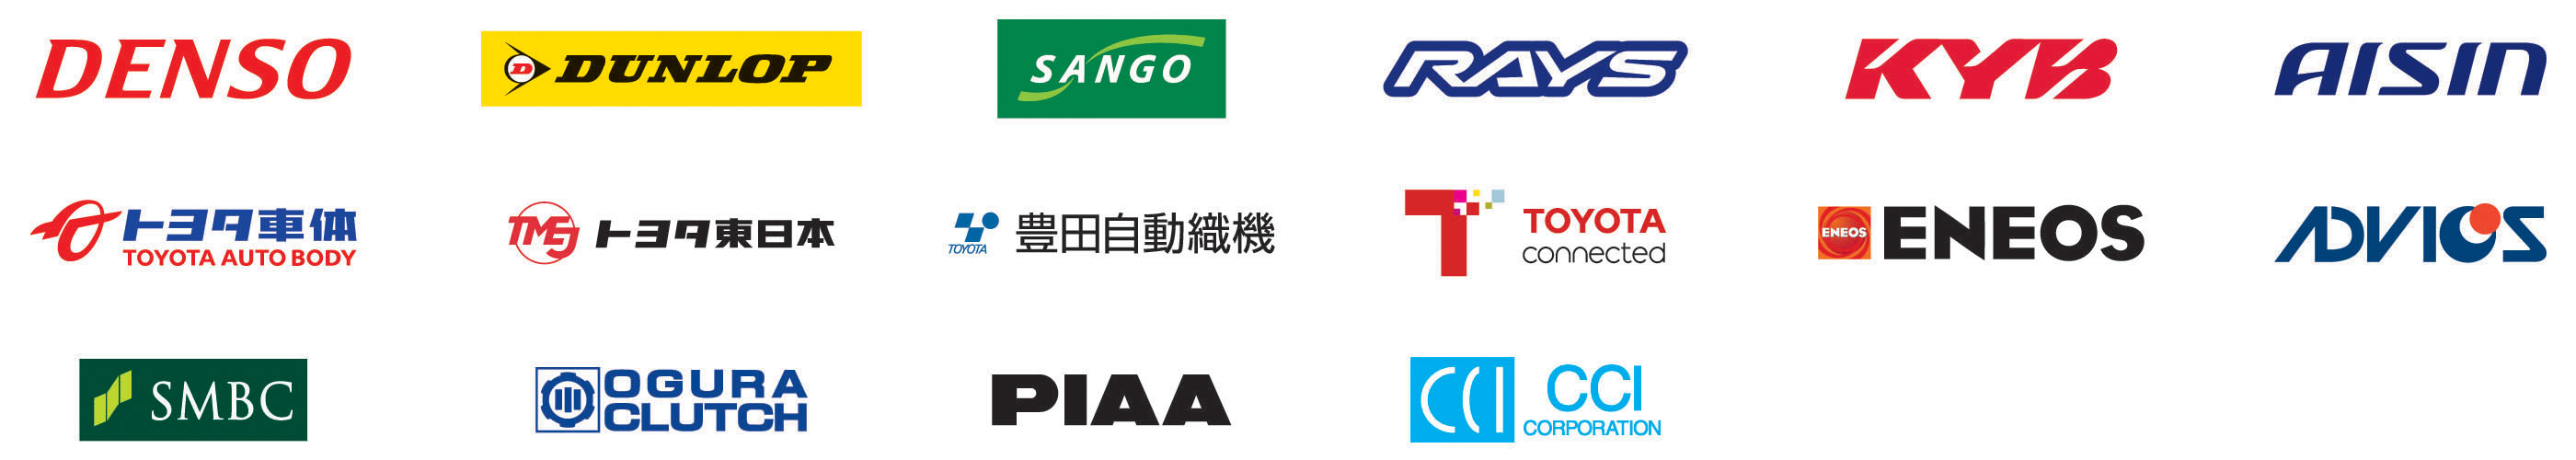 TOYOTA GAZOO Racing 全日本ラリー選手権(JRC) 2021年 オフィシャルスポンサー一覧